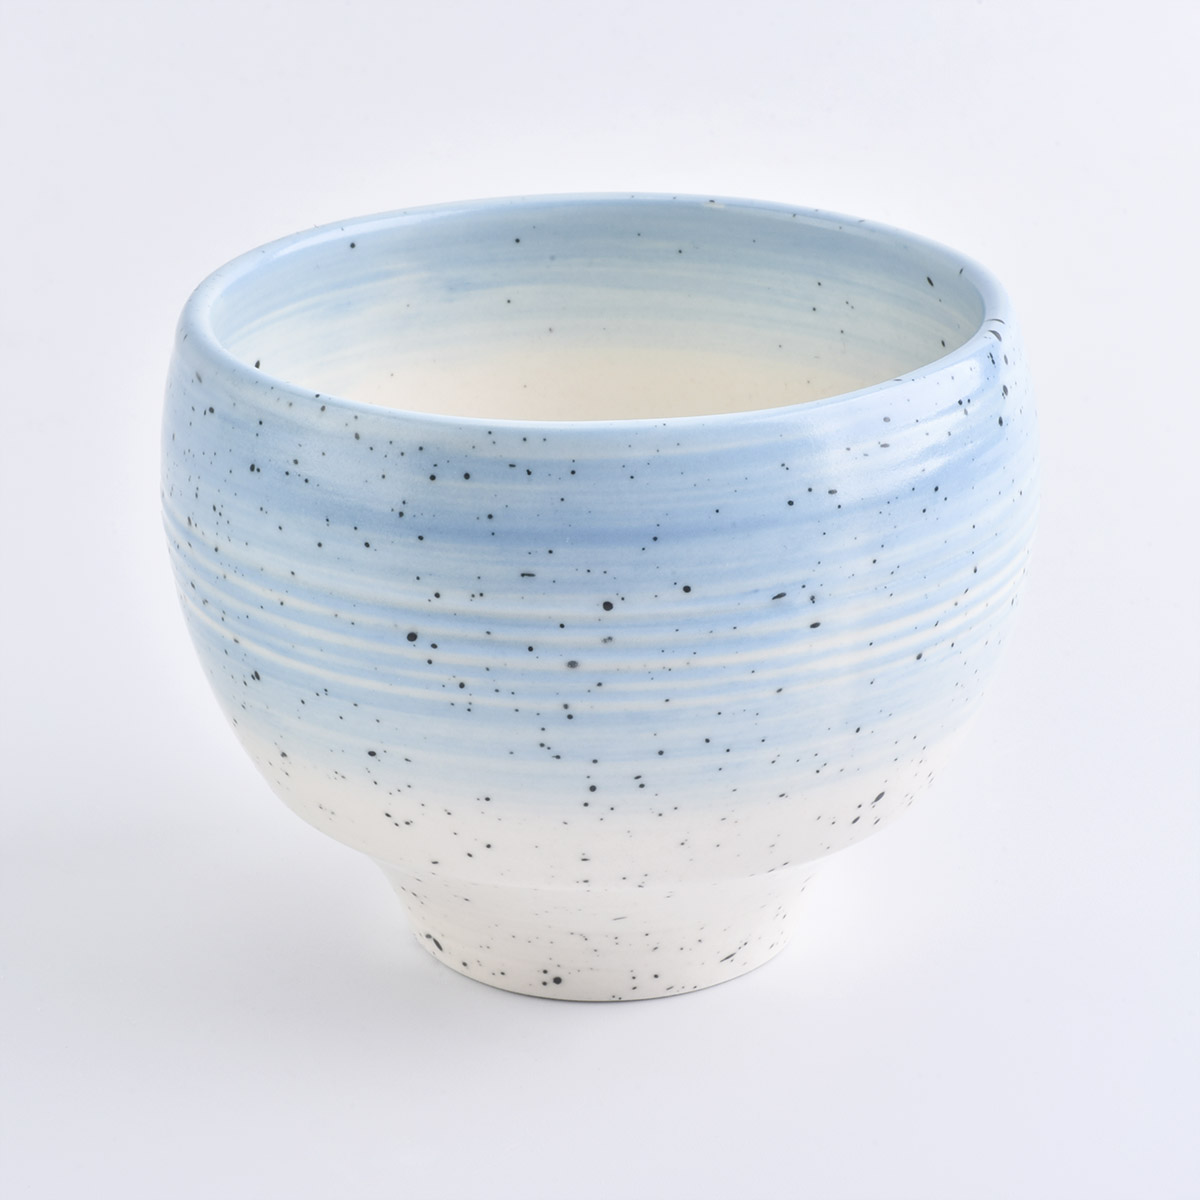 wadah lilin keramik unik partai besar putih dan biru